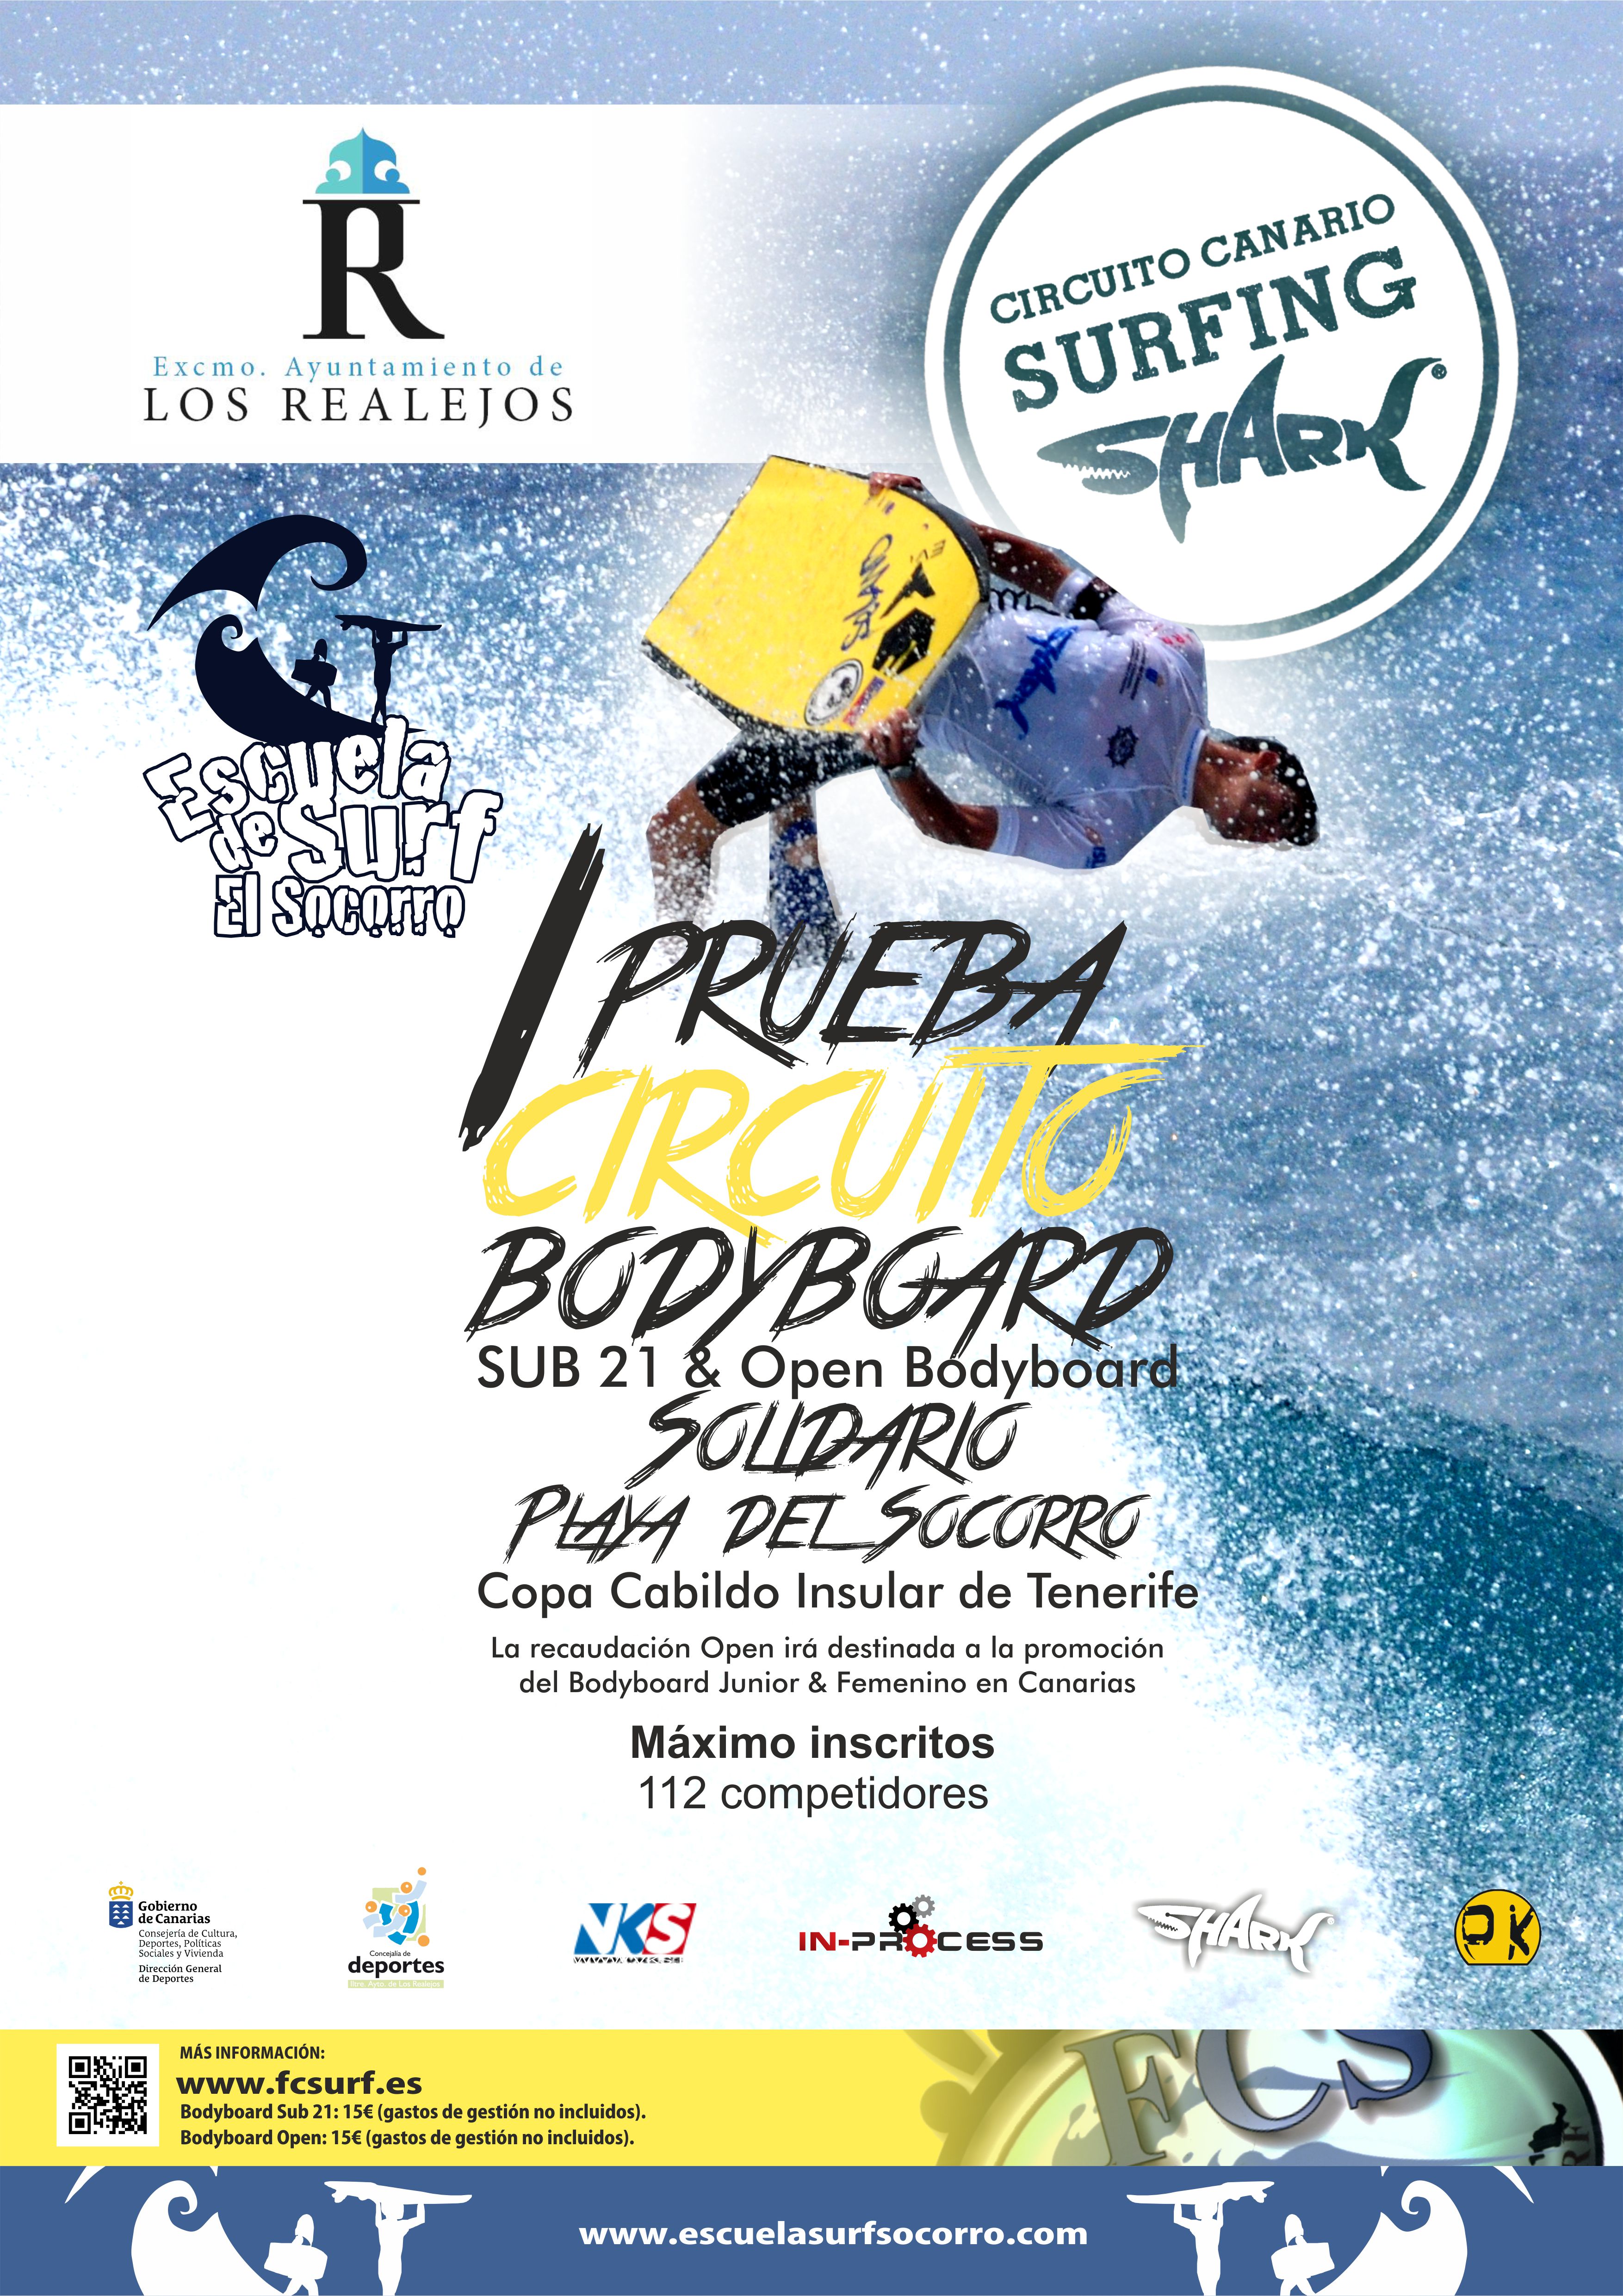 I PRUEBA CIRCUITO CANARIO DE SURFING SHARK-BODYBOARD SUB 21 - Inscríbete